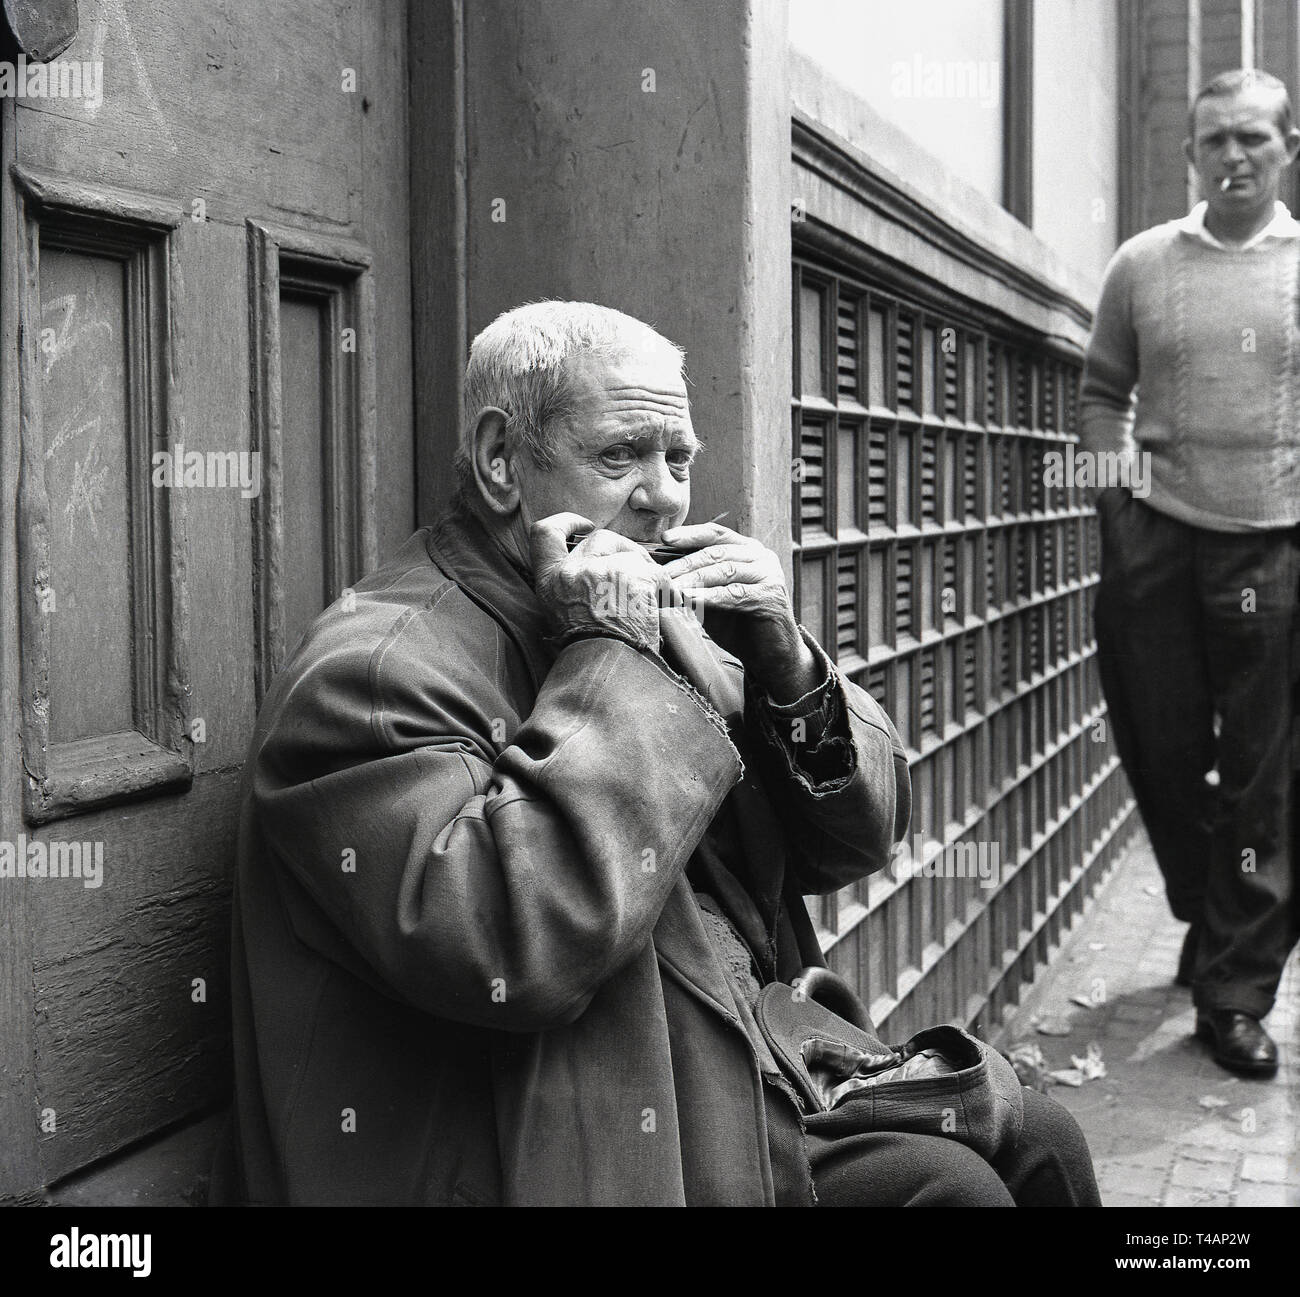 Anni sessanta, storico, un busker, un anziano uomo seduto in una strada porta con la sua calotta aperta nel suo giro, la riproduzione di un'armonica o armonica a bocca da Stepney mercato, East London, Londra, Foto Stock